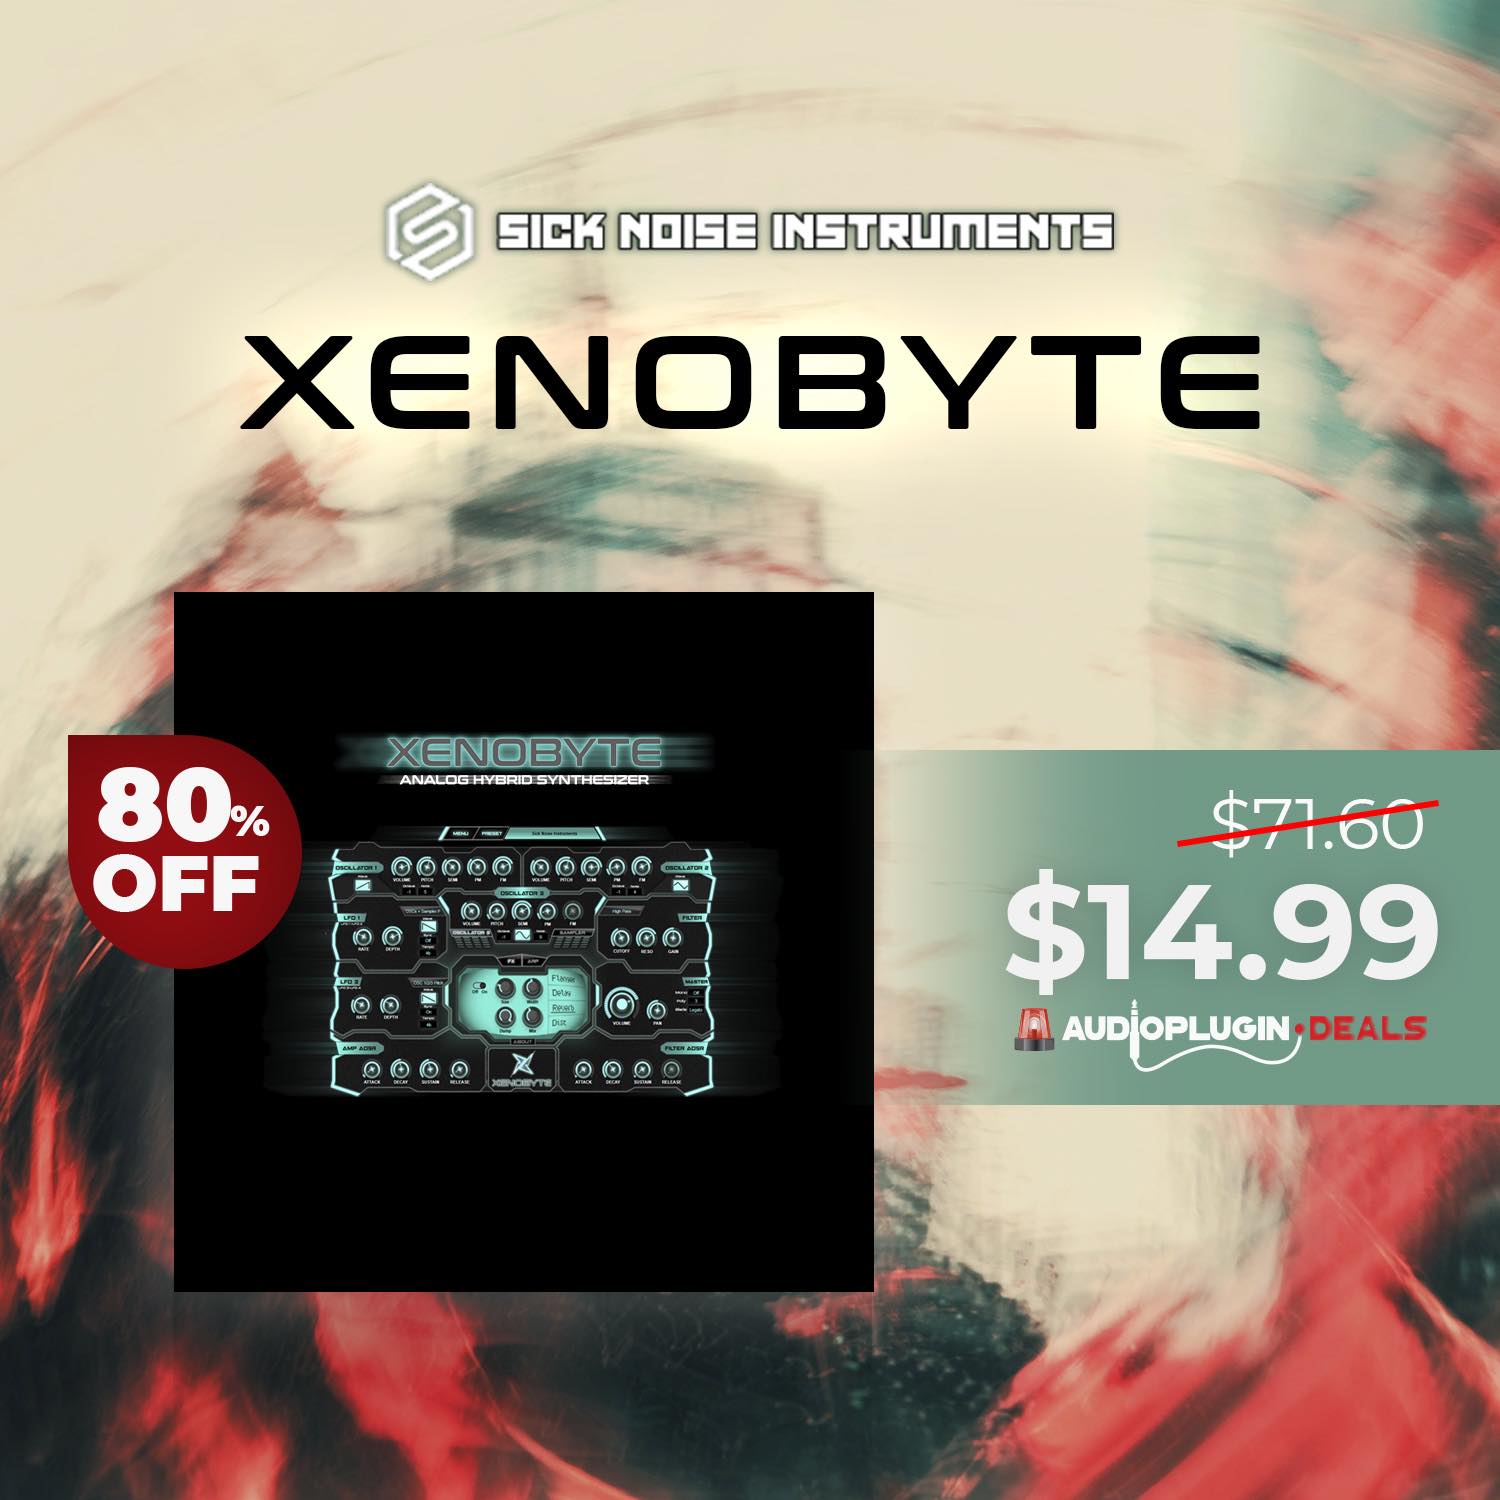 無料配布】Sick Noise Instruments『XENOBYTE』トランス、テクノ、EDM